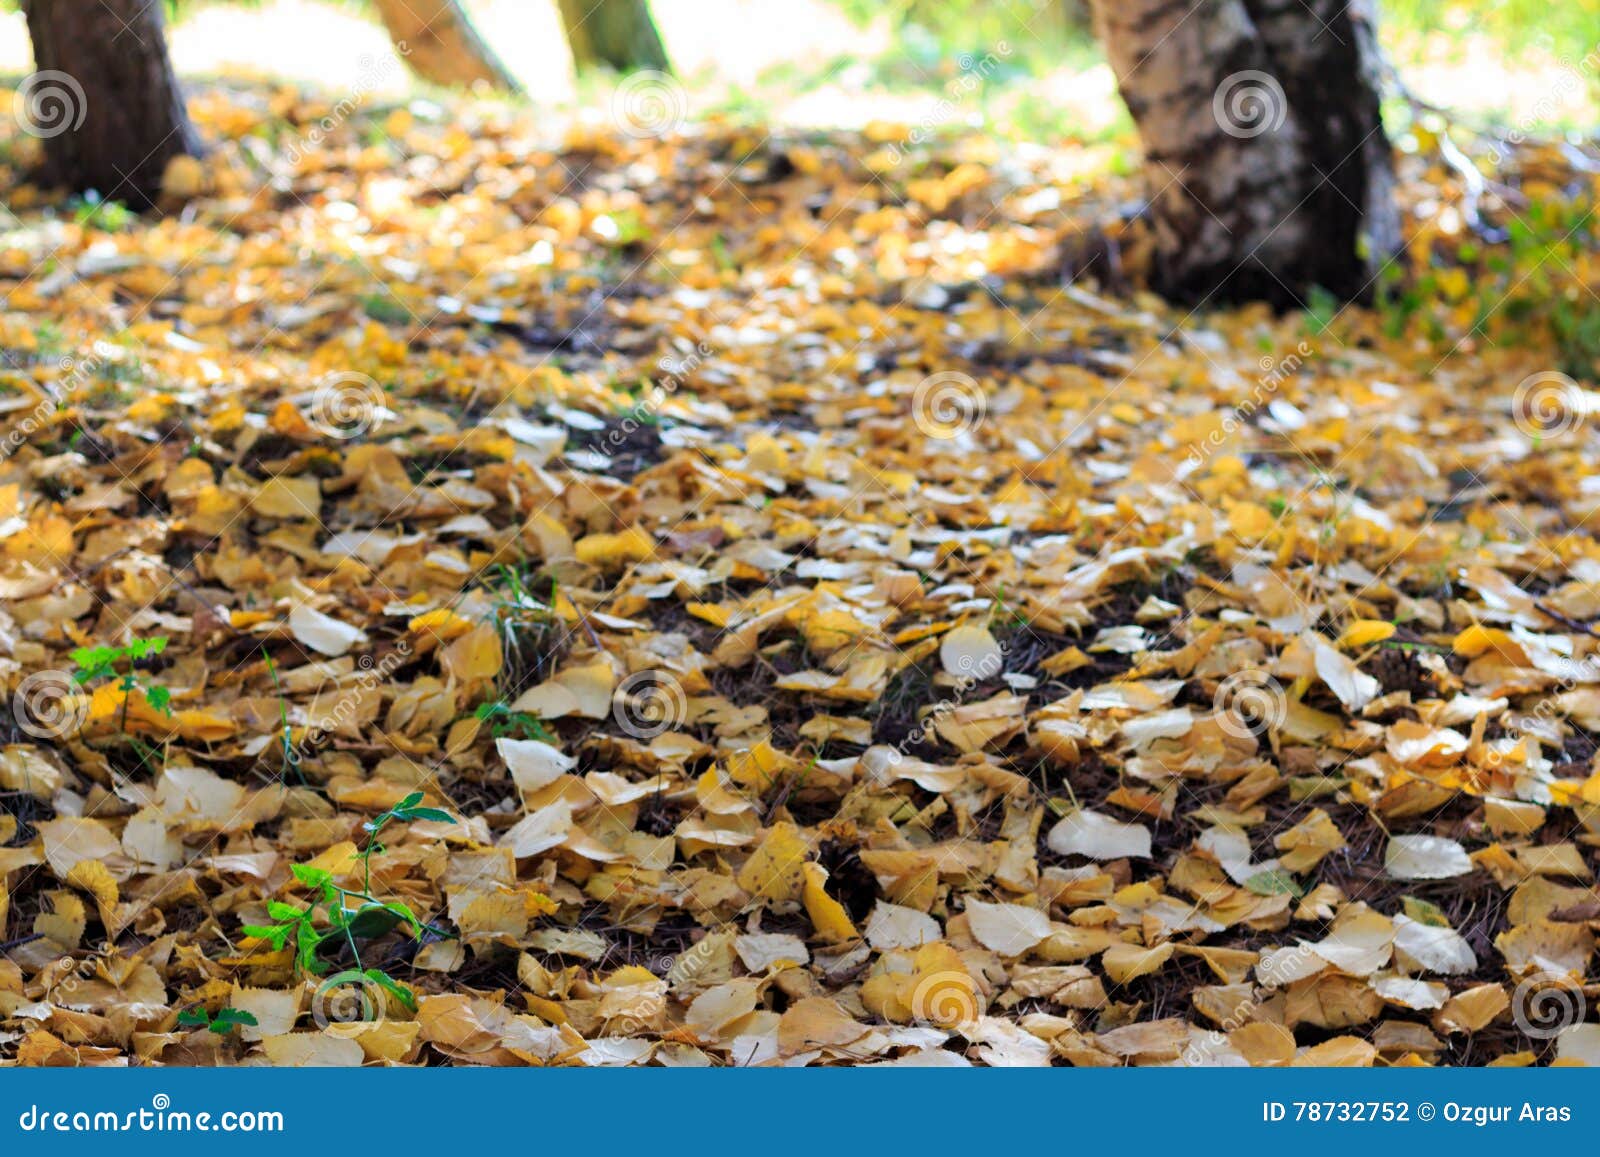 Autumn Season, Alberi E Foglie Di Giallo Fotografia Stock - Immagine di ...